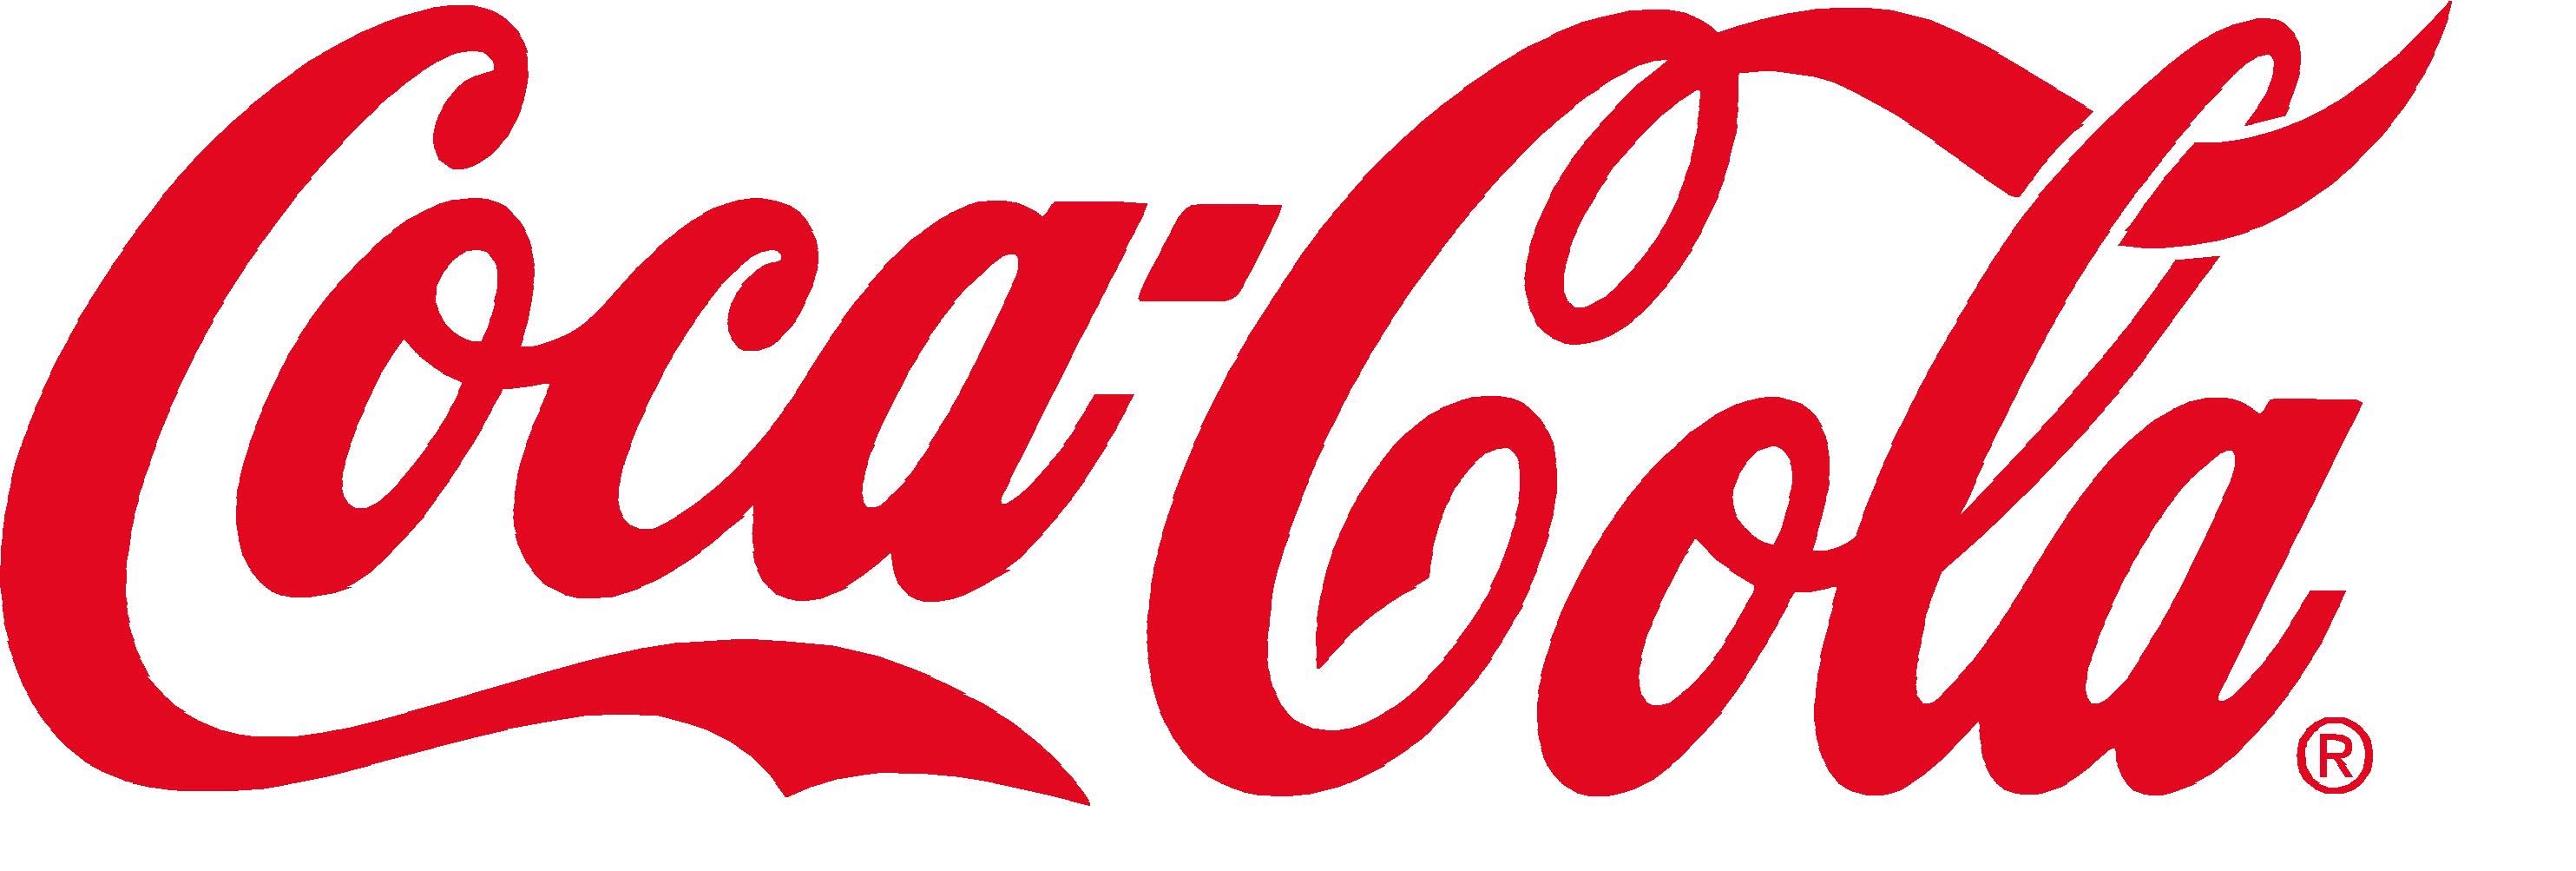 Coca-Cola Schriftzug rot.jpg